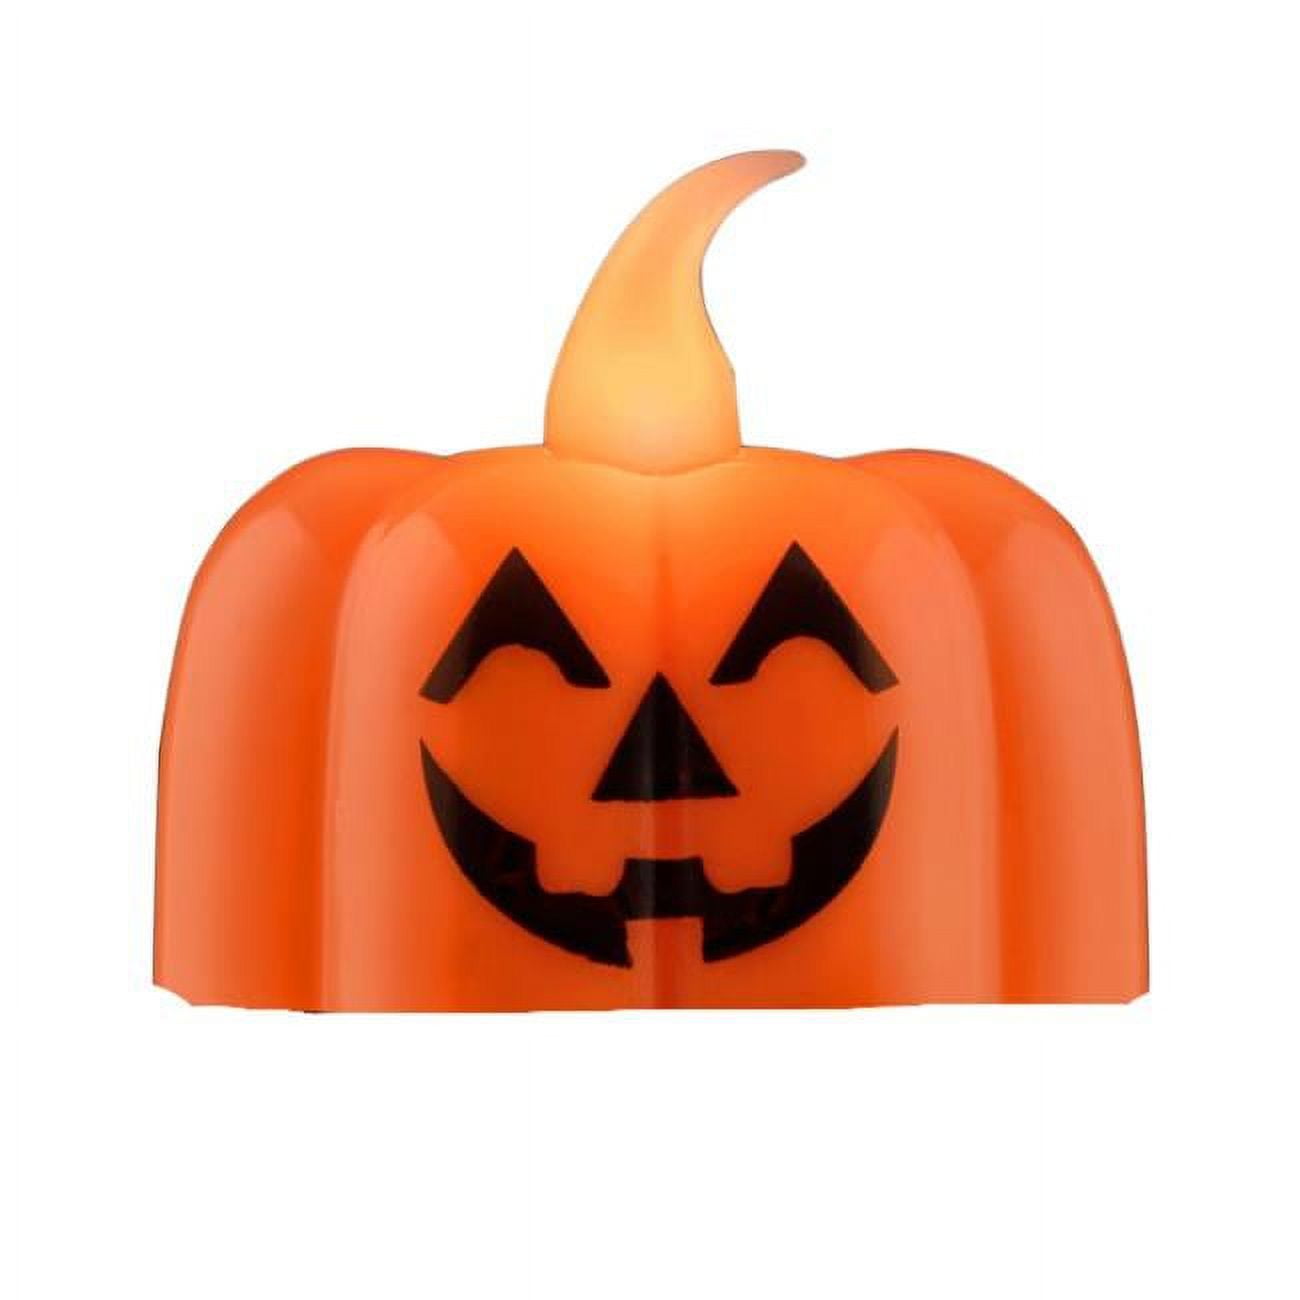 Picture of Blinkee LUPTLACH Light Up Pumpkin Tea Light Flameless Artificial Candle for Halloween